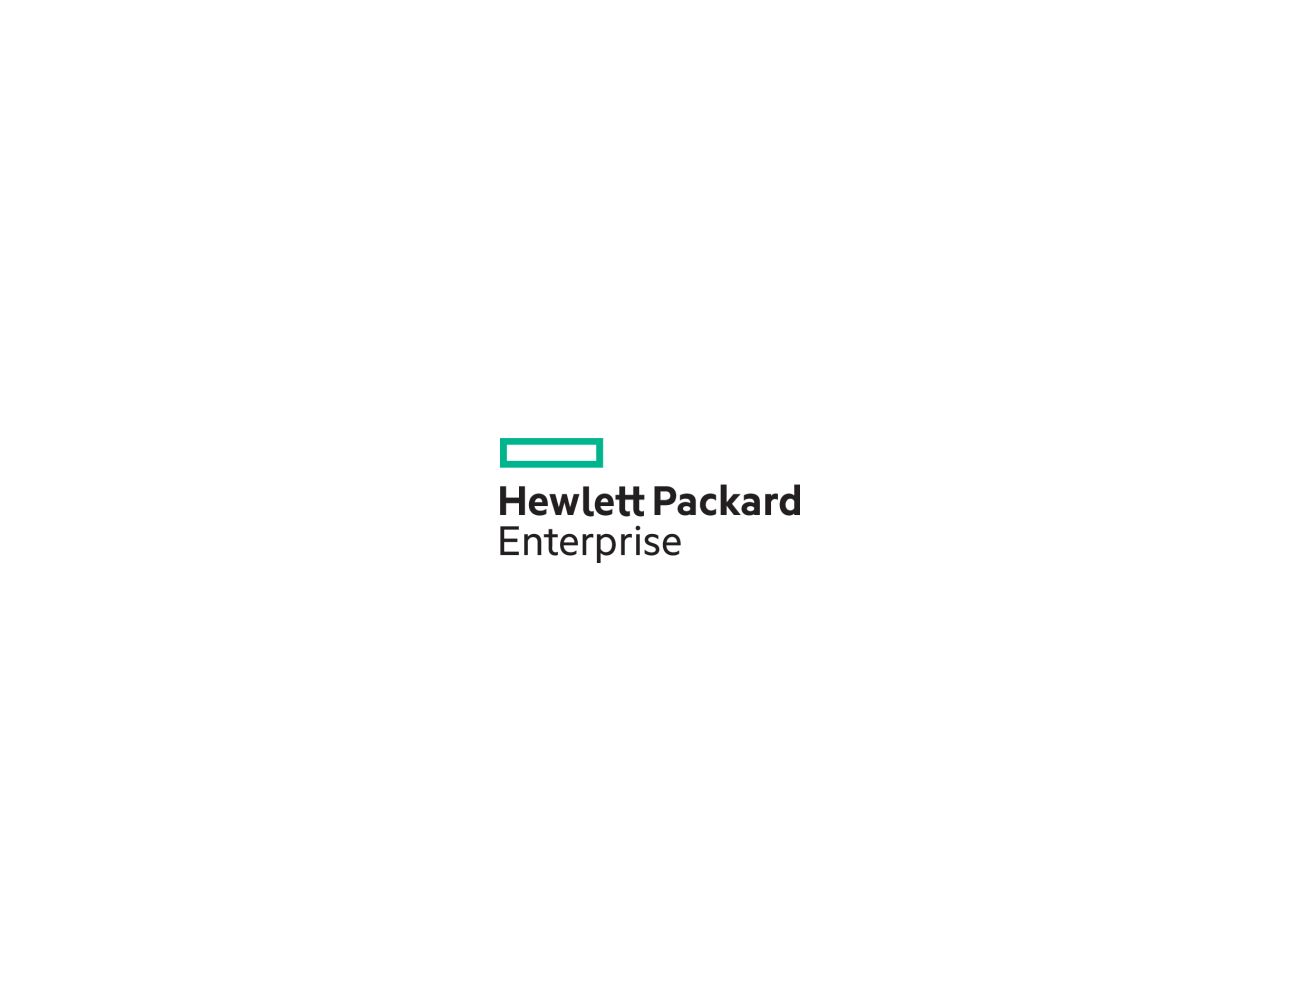 Hewlett packard enterprise. Hewlett Packard Enterprise (HPE). Hewlett Packard Enterprise logo. Опция HPE q1j29a. Hewlett Packard Enterprise logo f1.